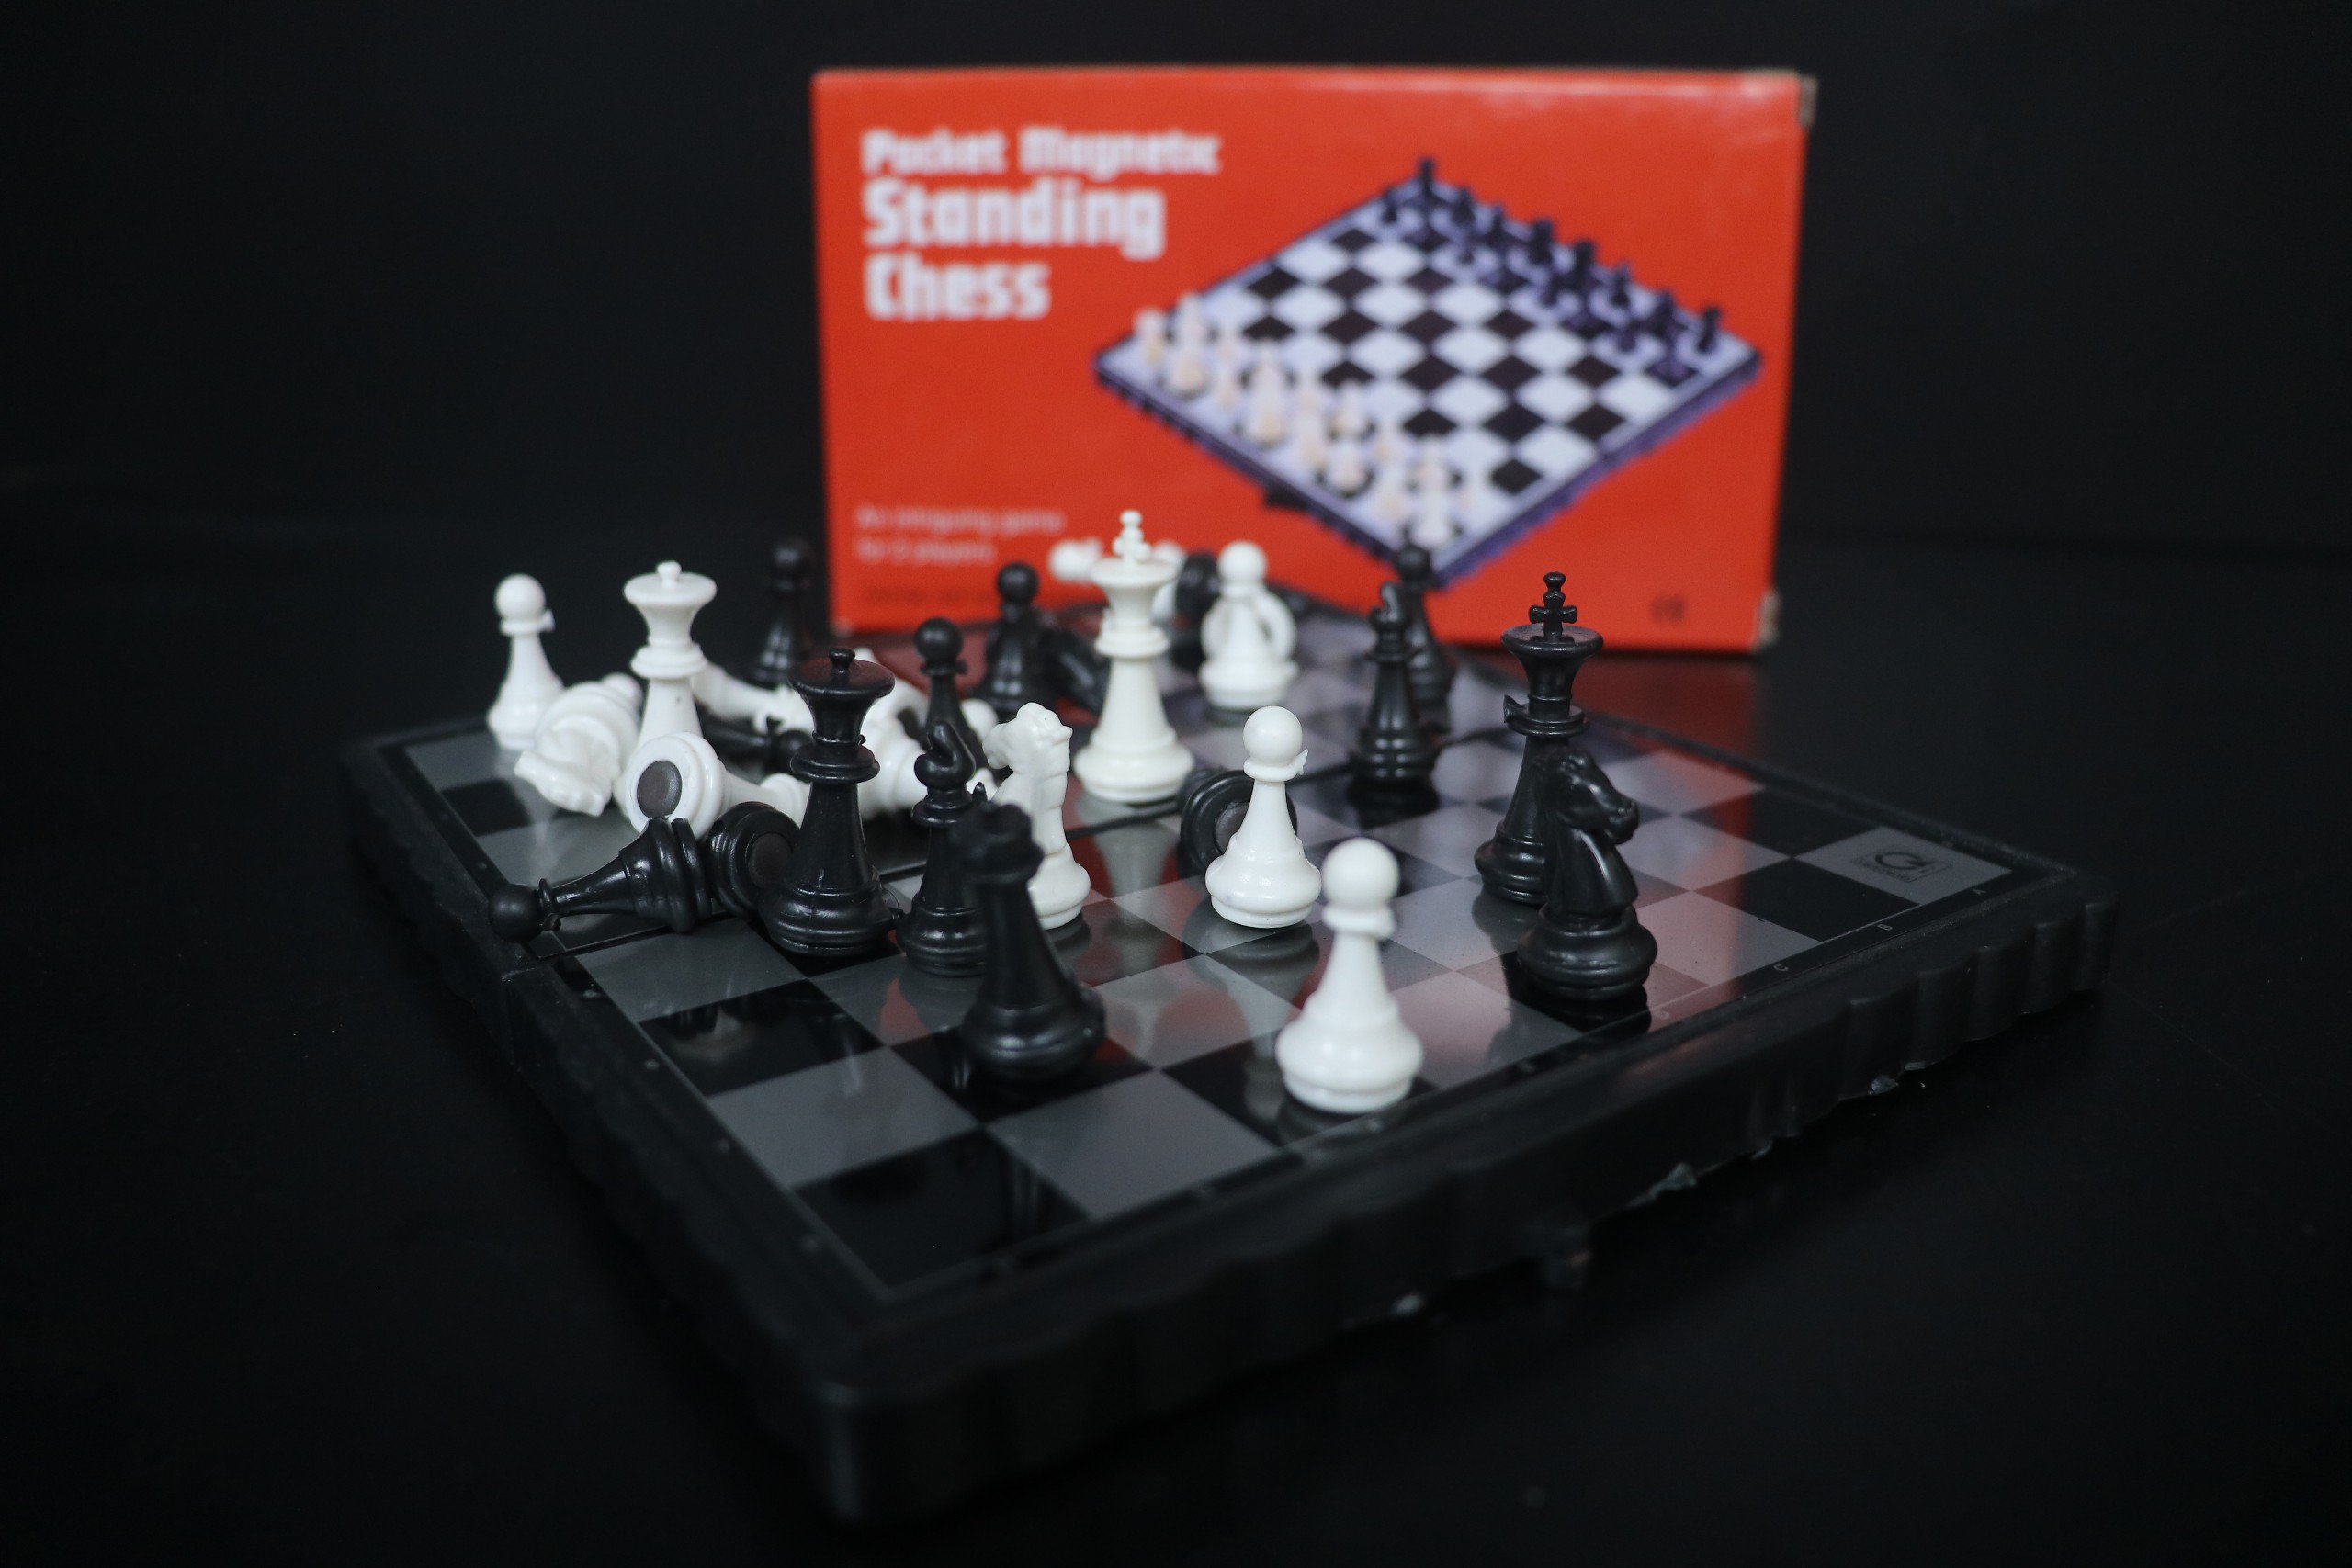 Bộ cờ vua Standing Chess